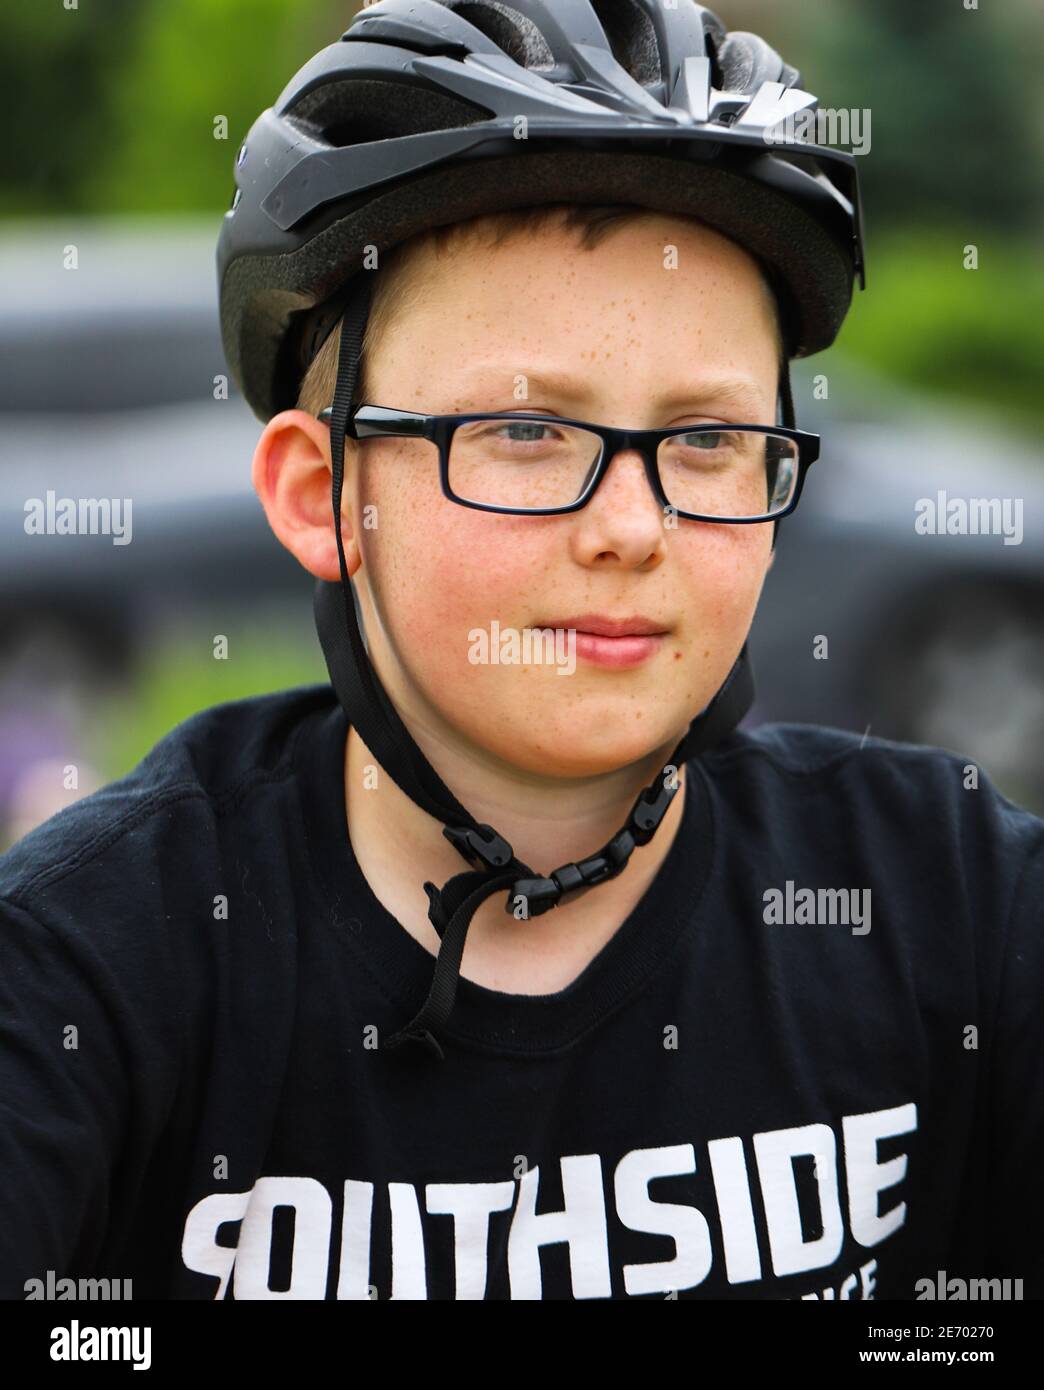 Junge gut aussehende fair gehäutet preteen Junge trägt ein schwarzes Fahrrad Helm und dunkle Brille sehen zuversichtlich für den Start Das Rennen Stockfoto